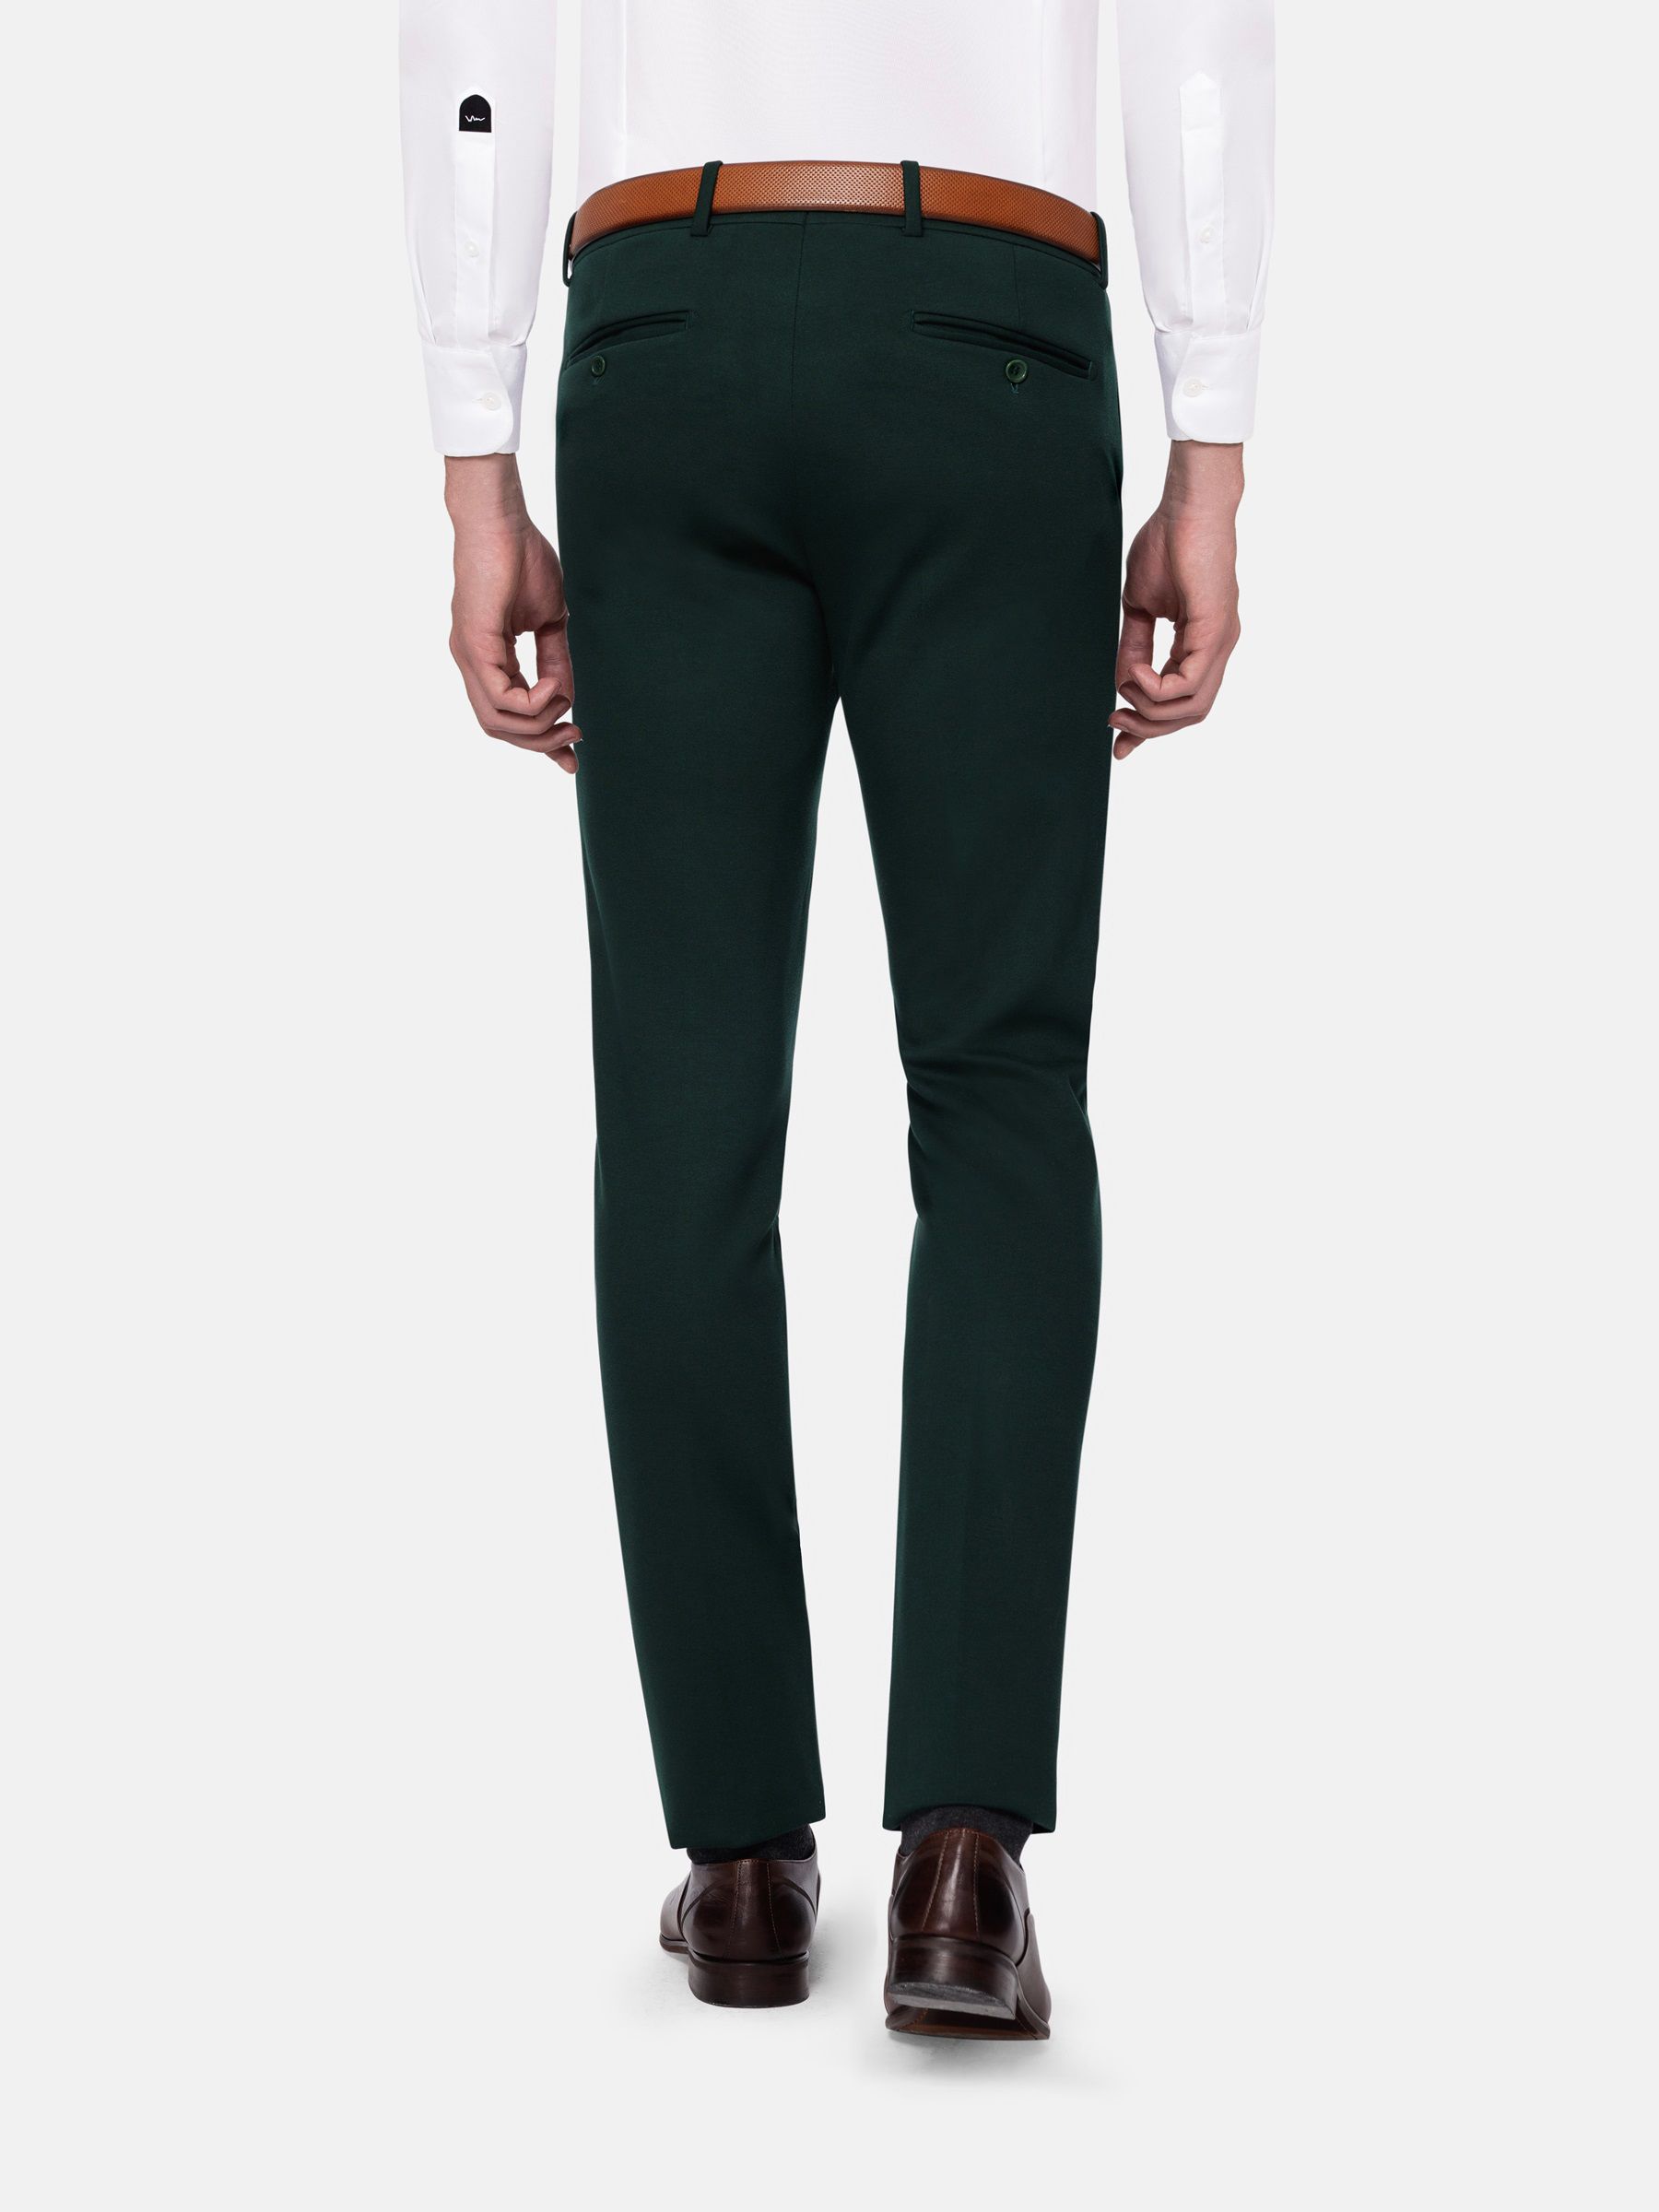 BKT50 Tailored Trousers in Wool Herringbone - Cyprus – Brooklyn Tailors